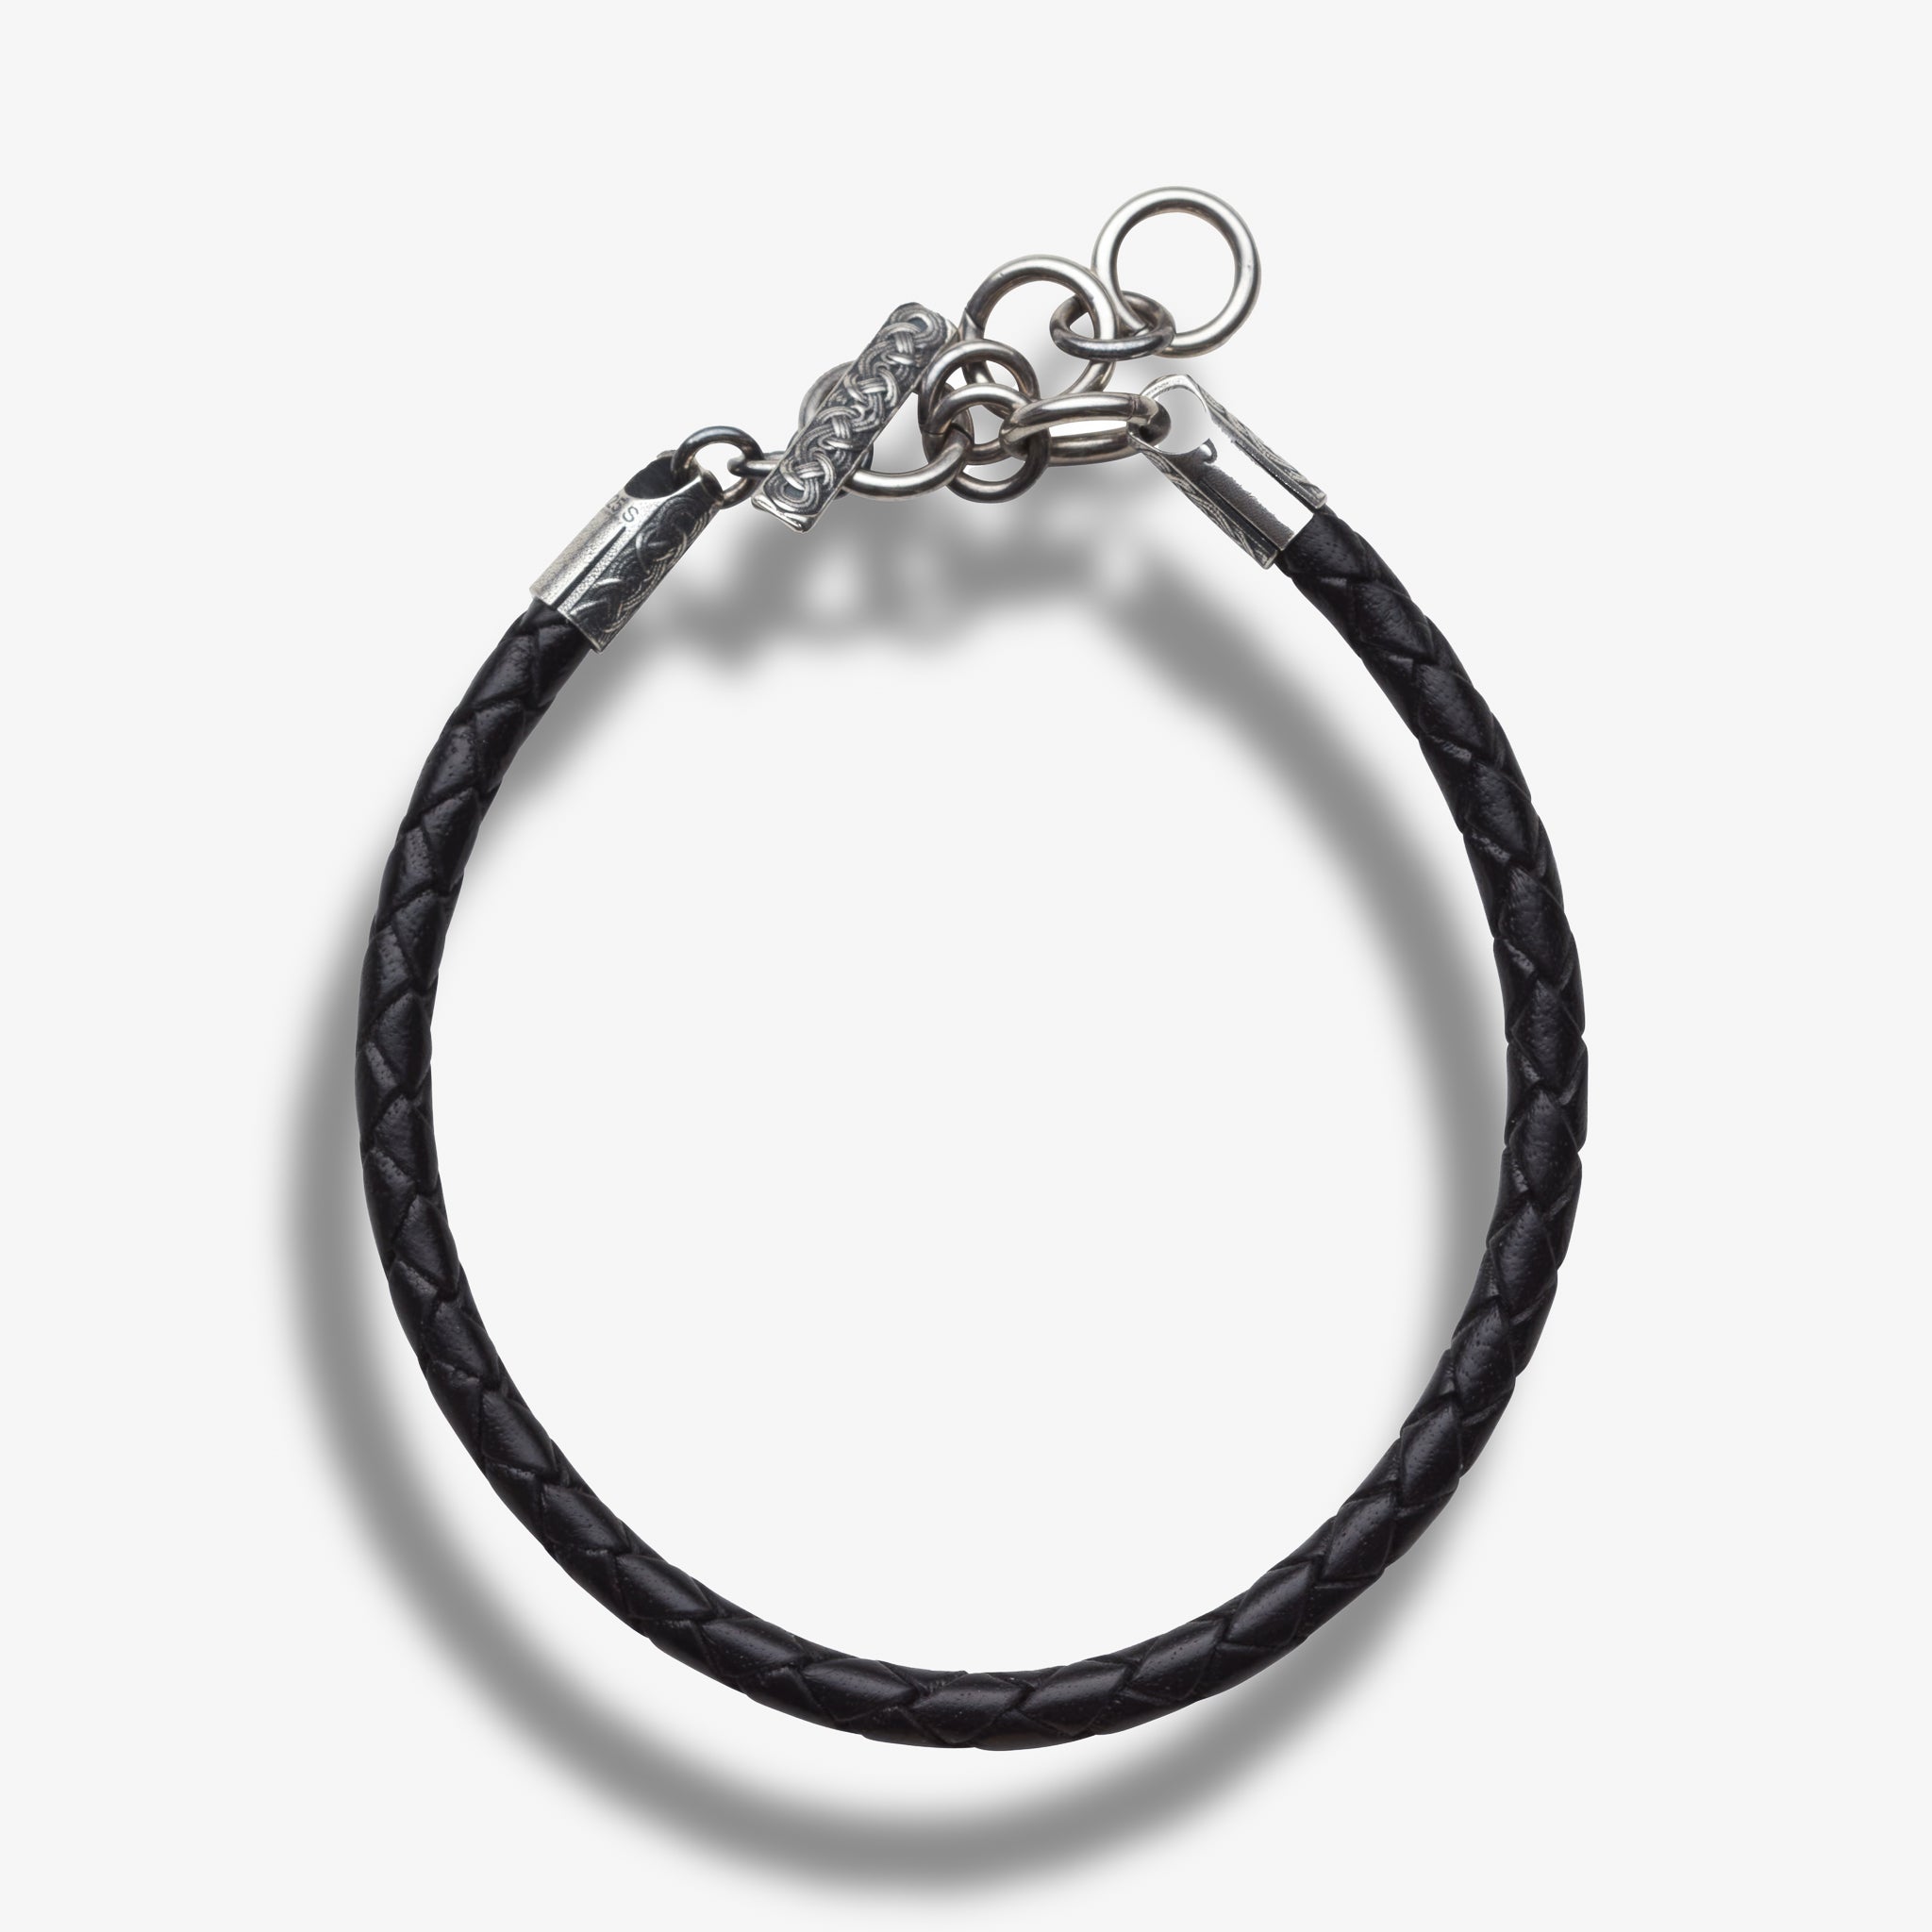 Myklebust Leather Bracelet by Sylvsmidja